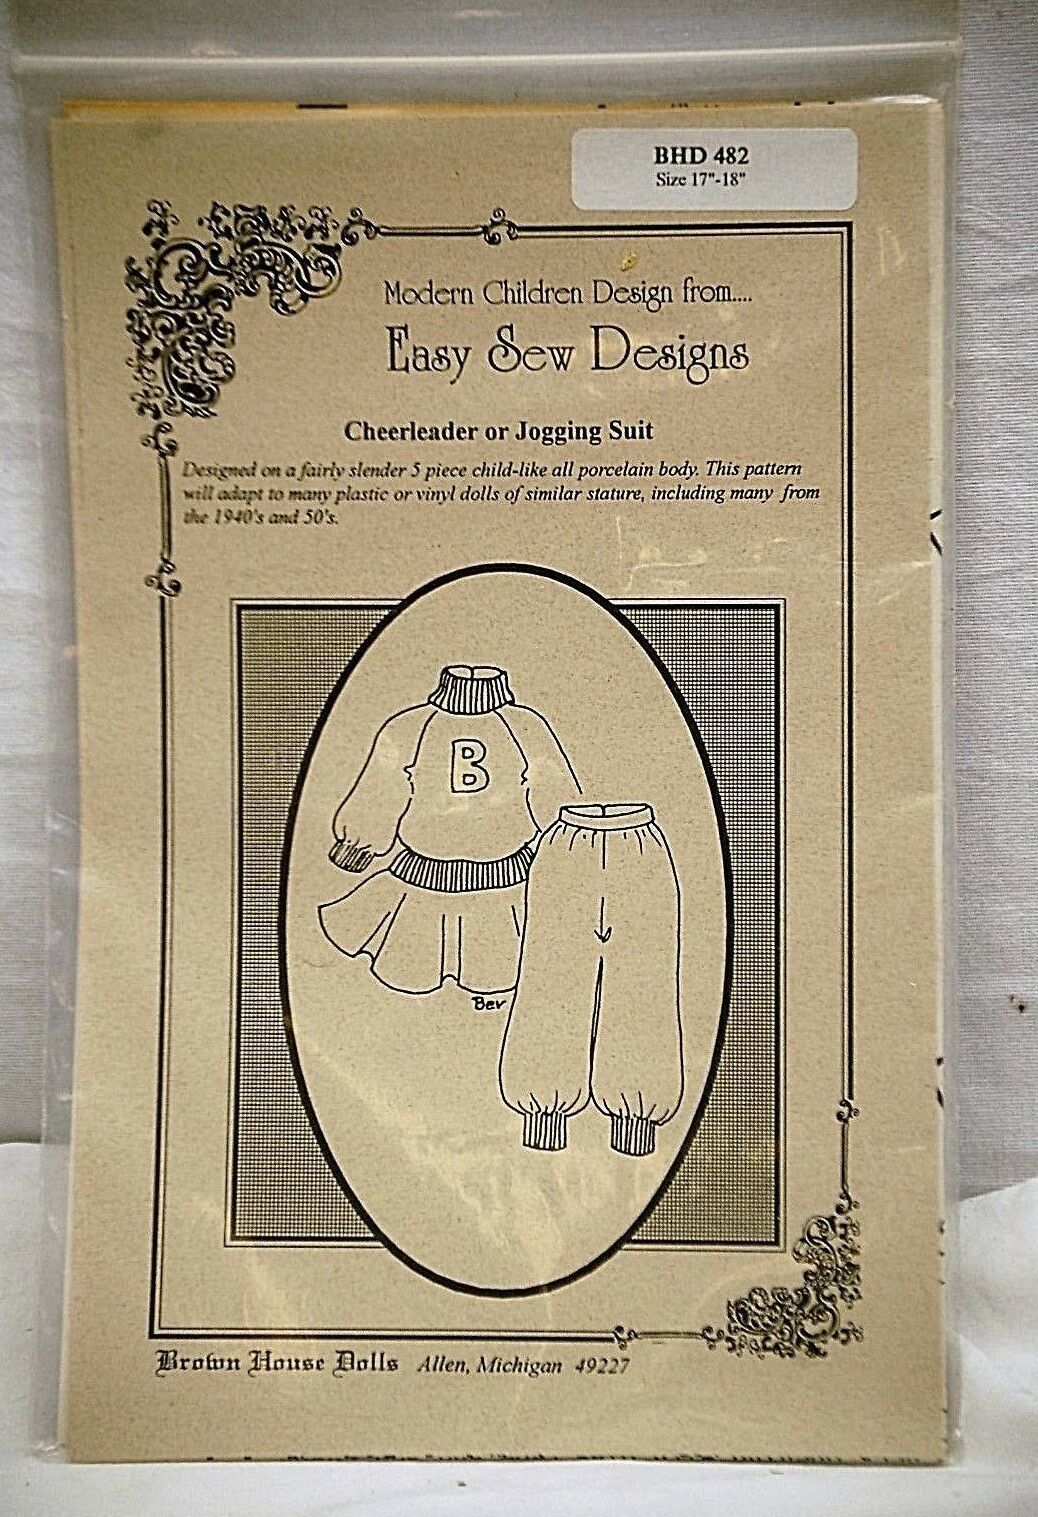 Vintage Easy Sew Designs Brown House Dolls Cheerleader or Jogging Suit BHD 482 - $12.99